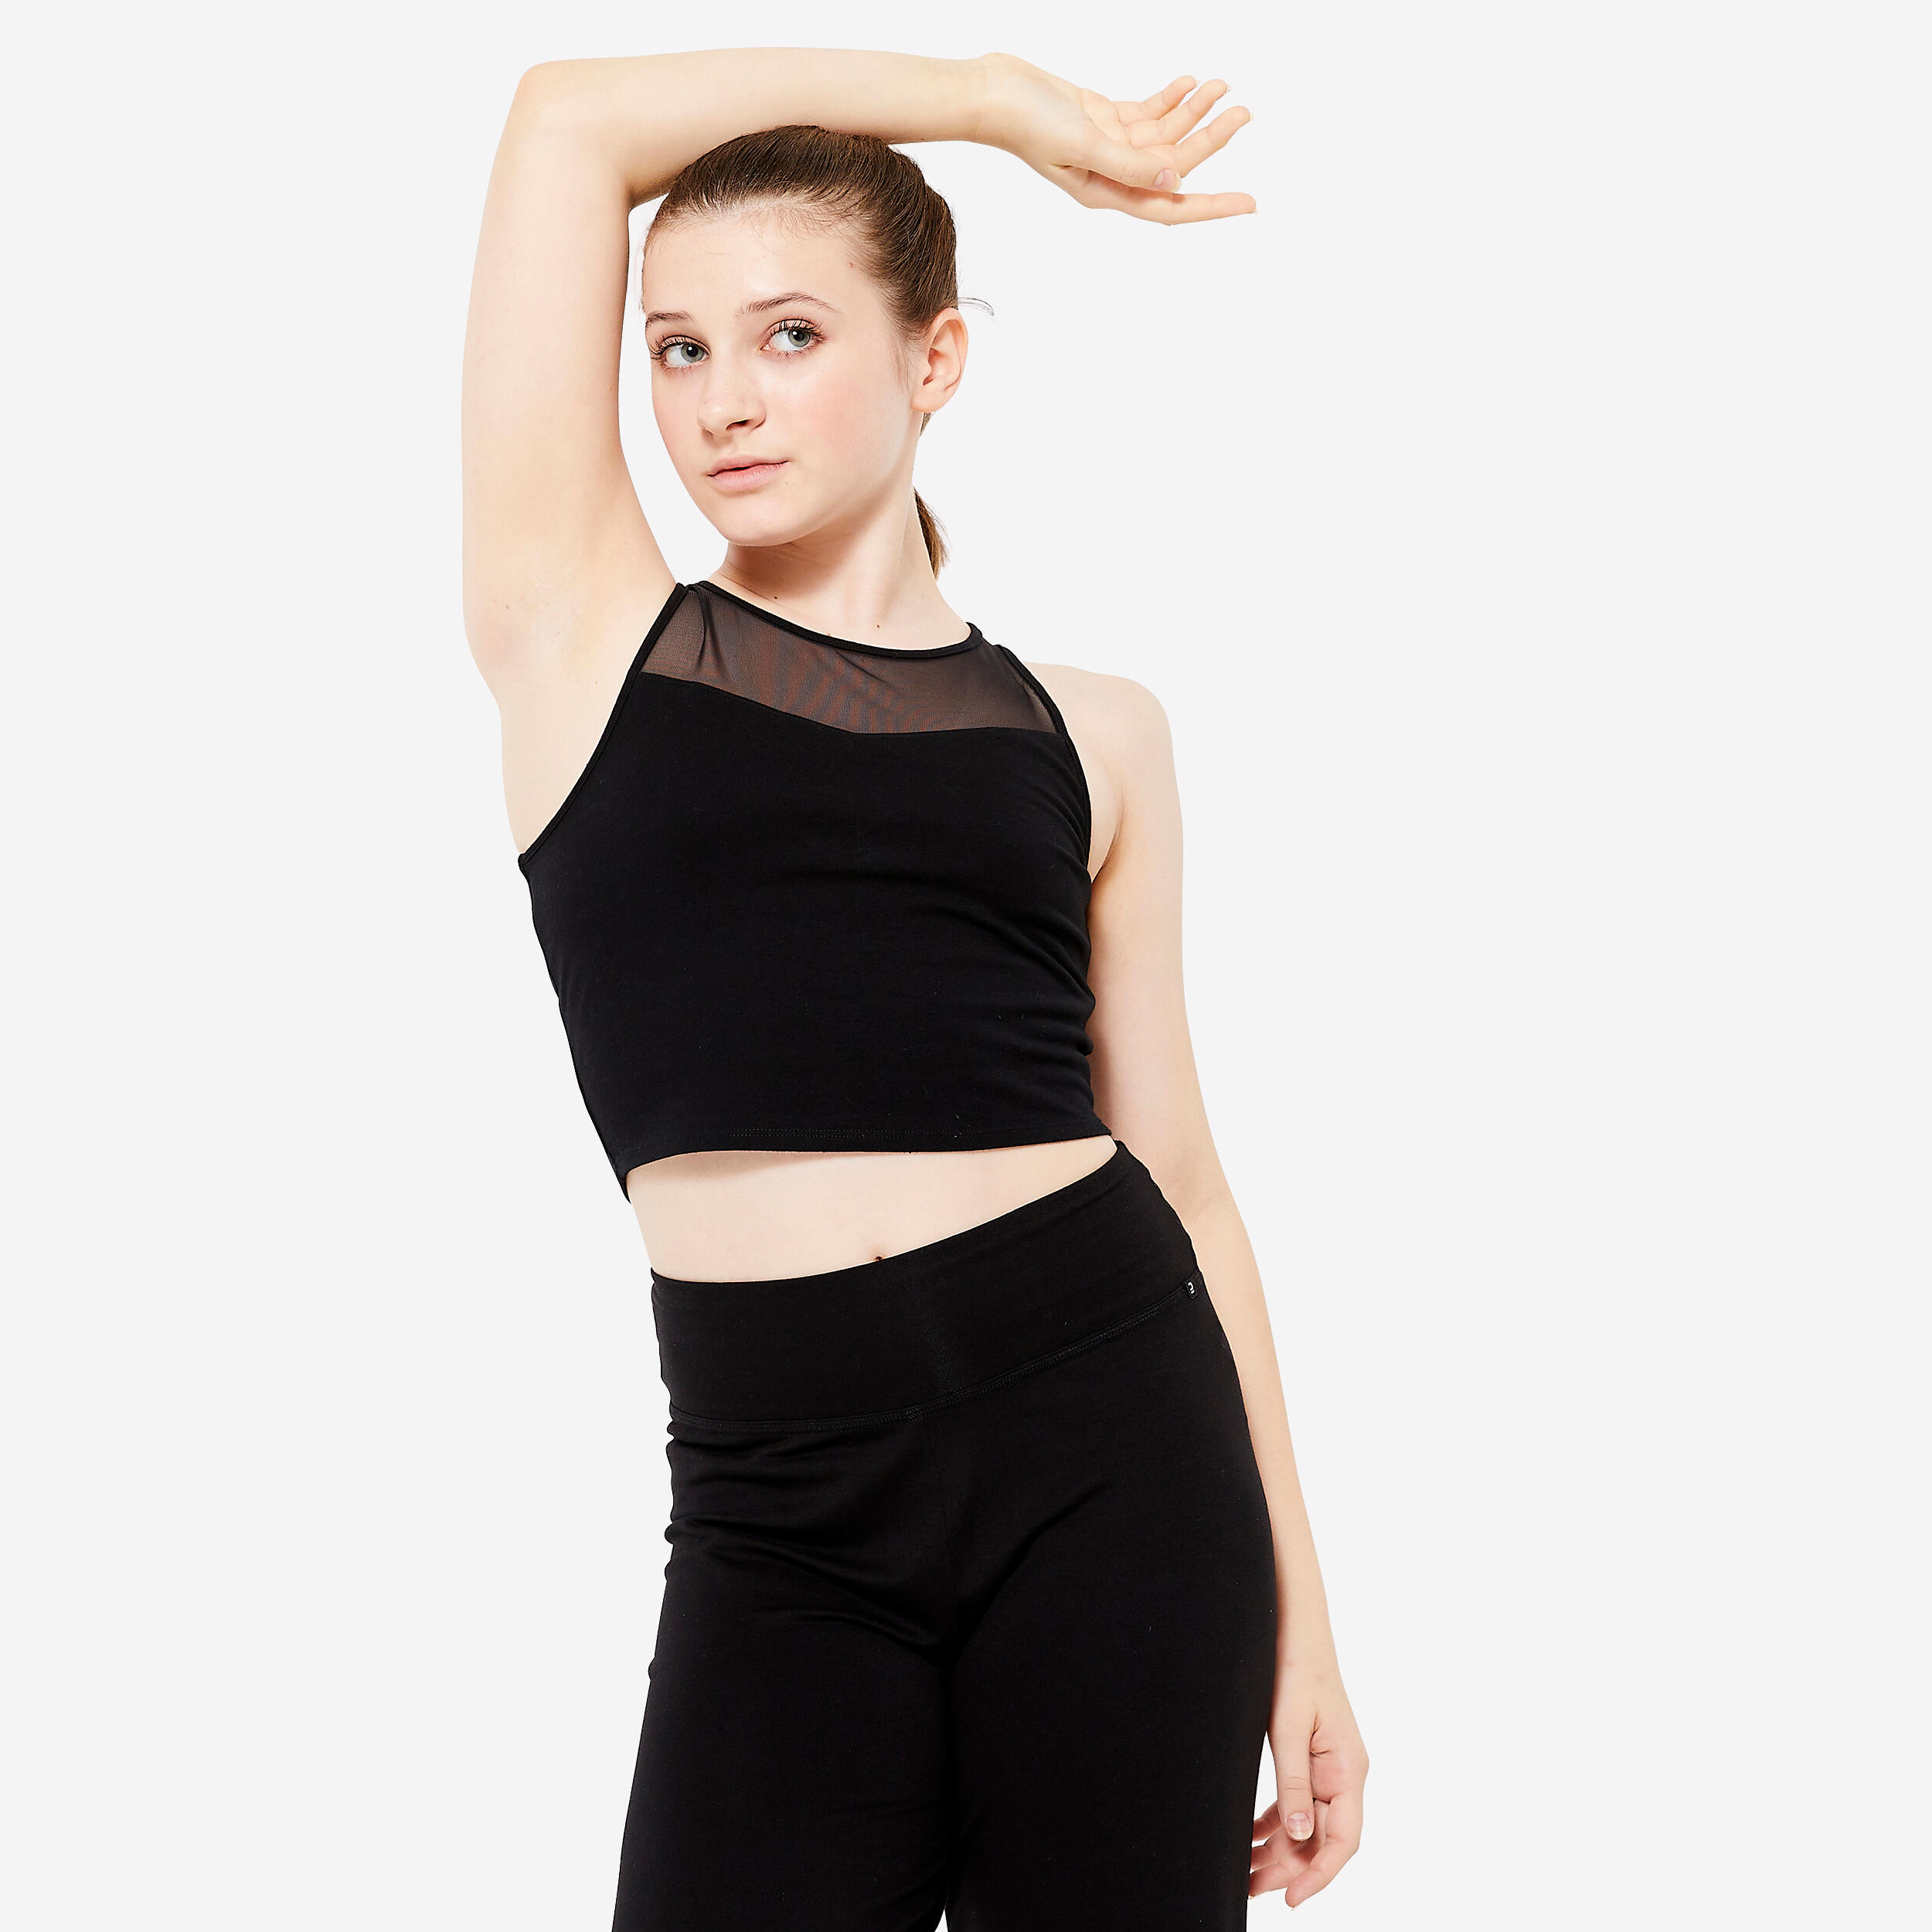 Girls' Modern Dance/Jazz Crop Top with Built-In Sports Bra - Black